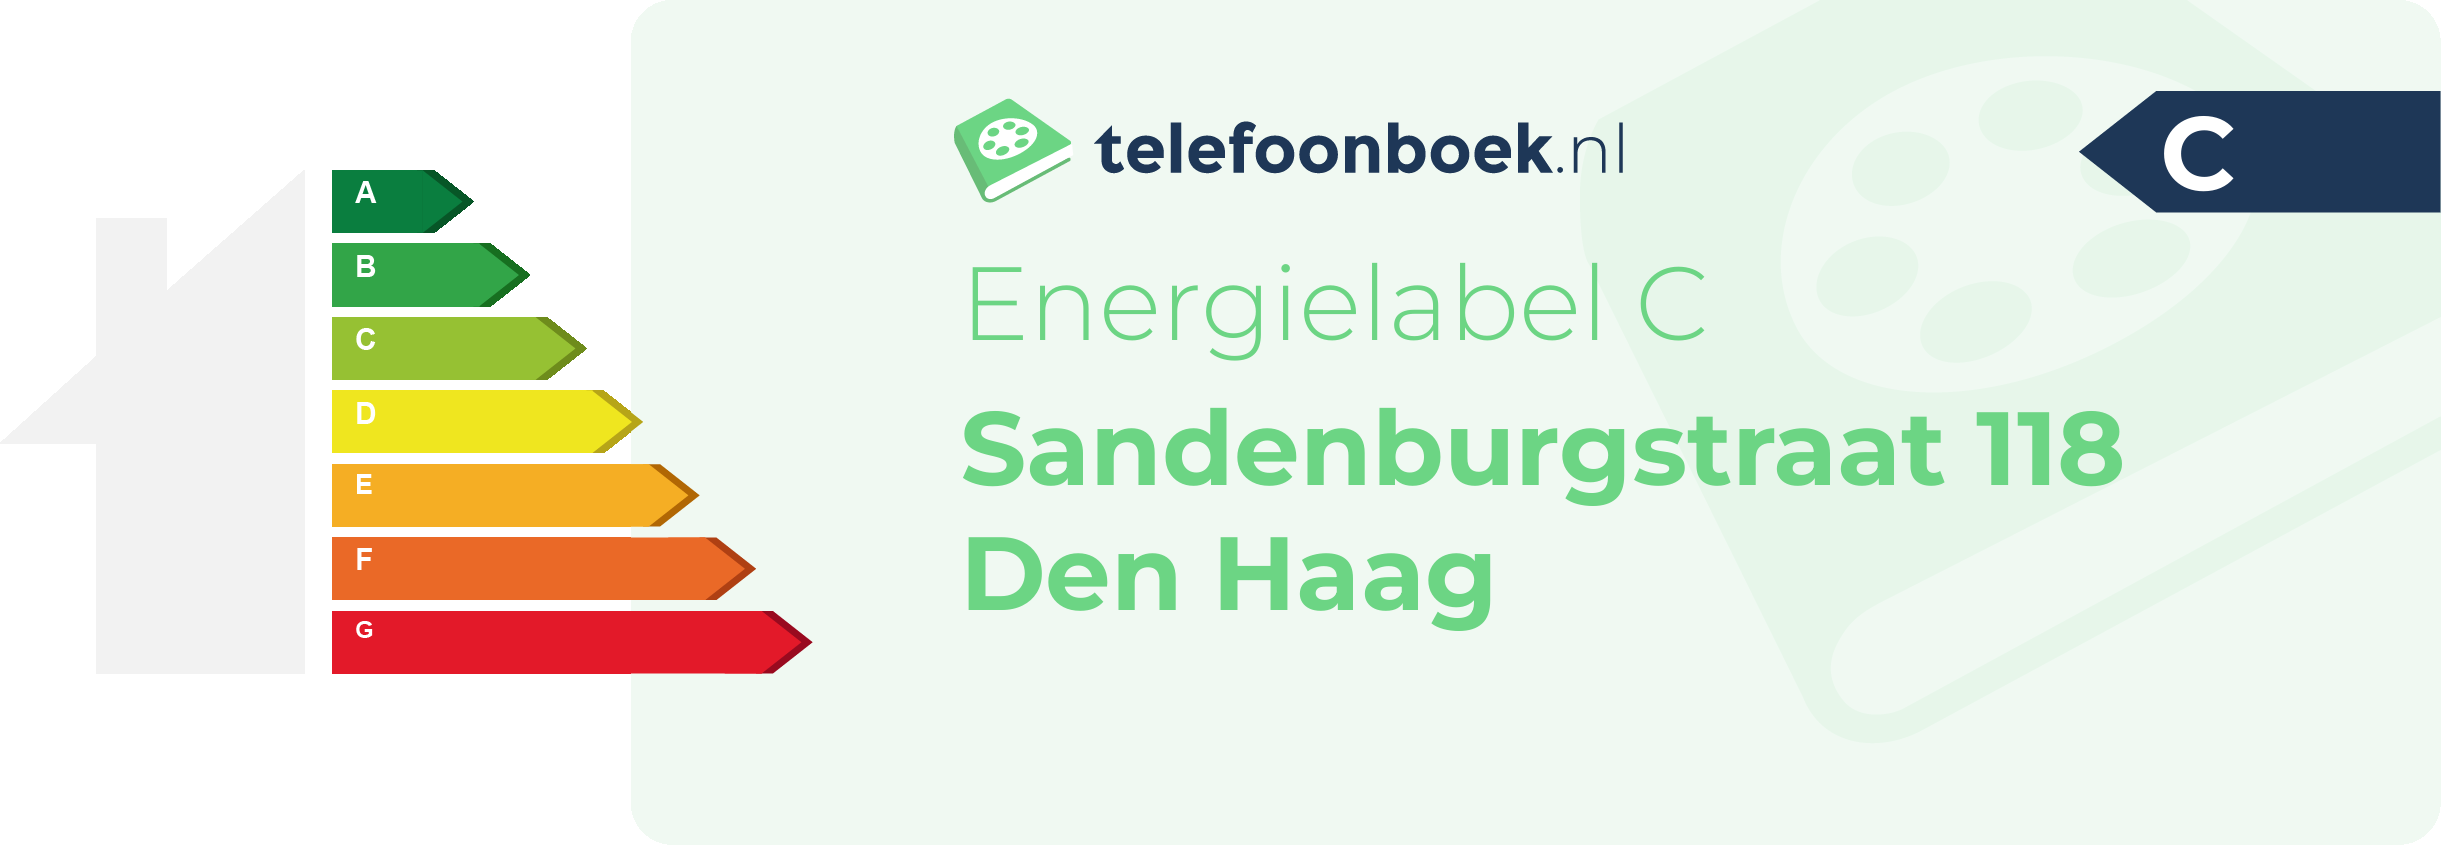 Energielabel Sandenburgstraat 118 Den Haag